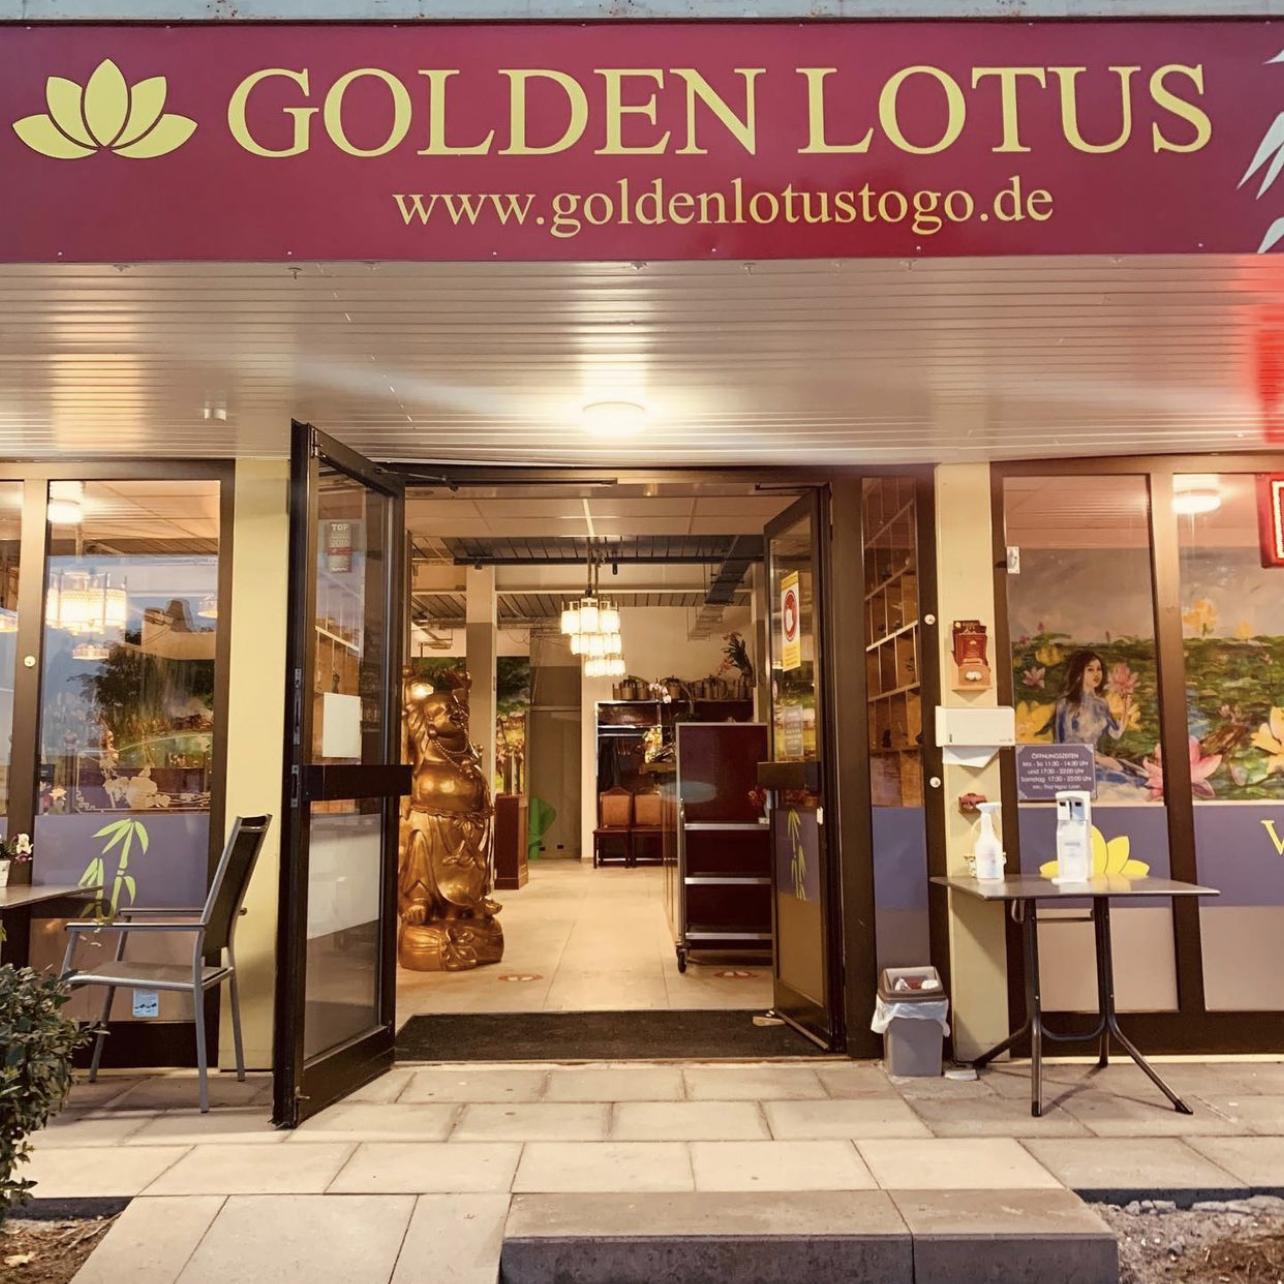 Restaurant "Golden Lotus" in Wiesbaden